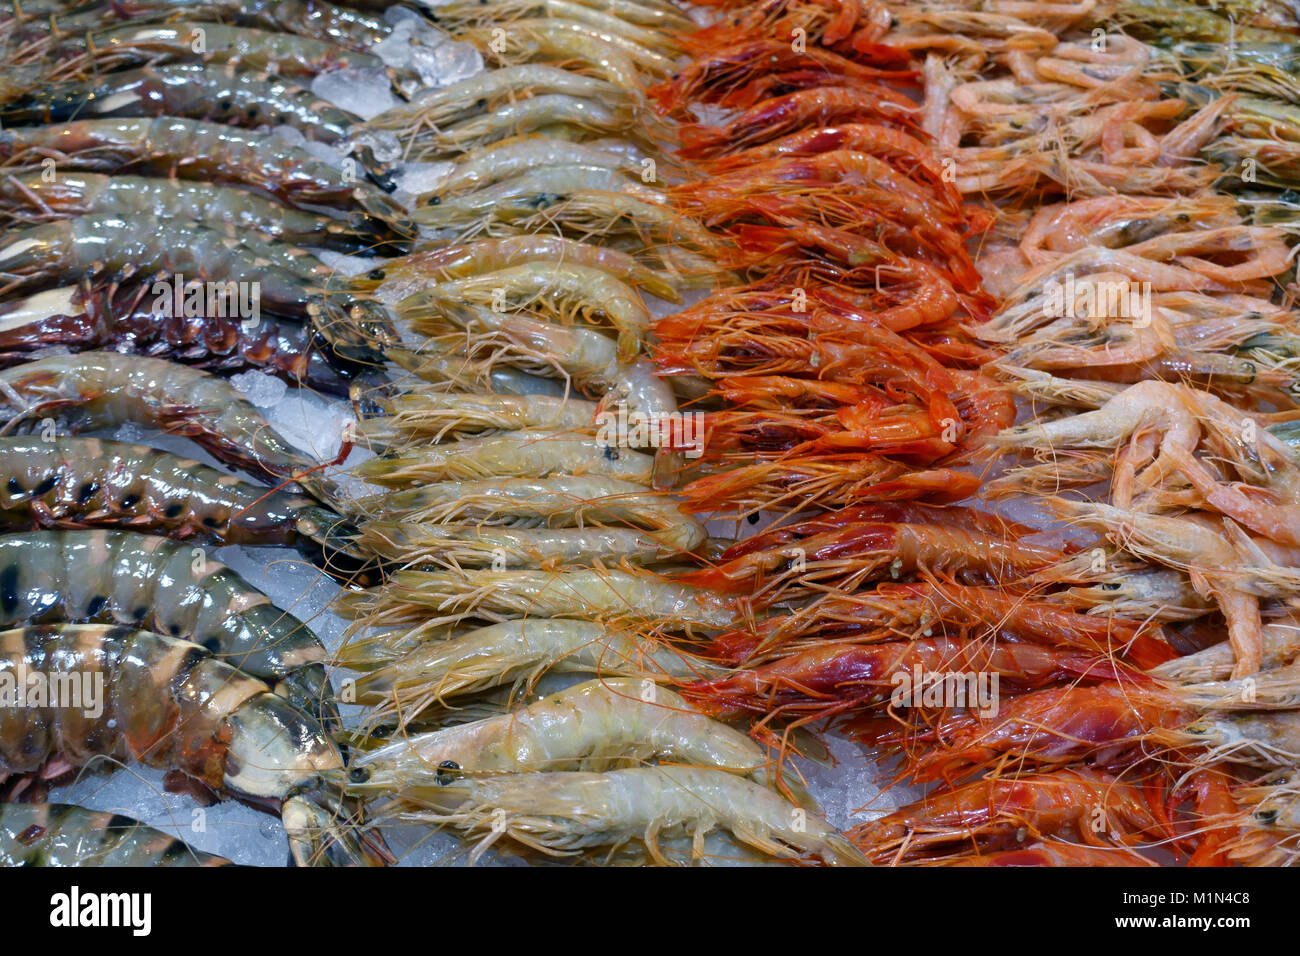 Varieties of crustaceans on sale in fish market in Santa Cruz de Tenerife, Canary Islands, Spain Stock Photo